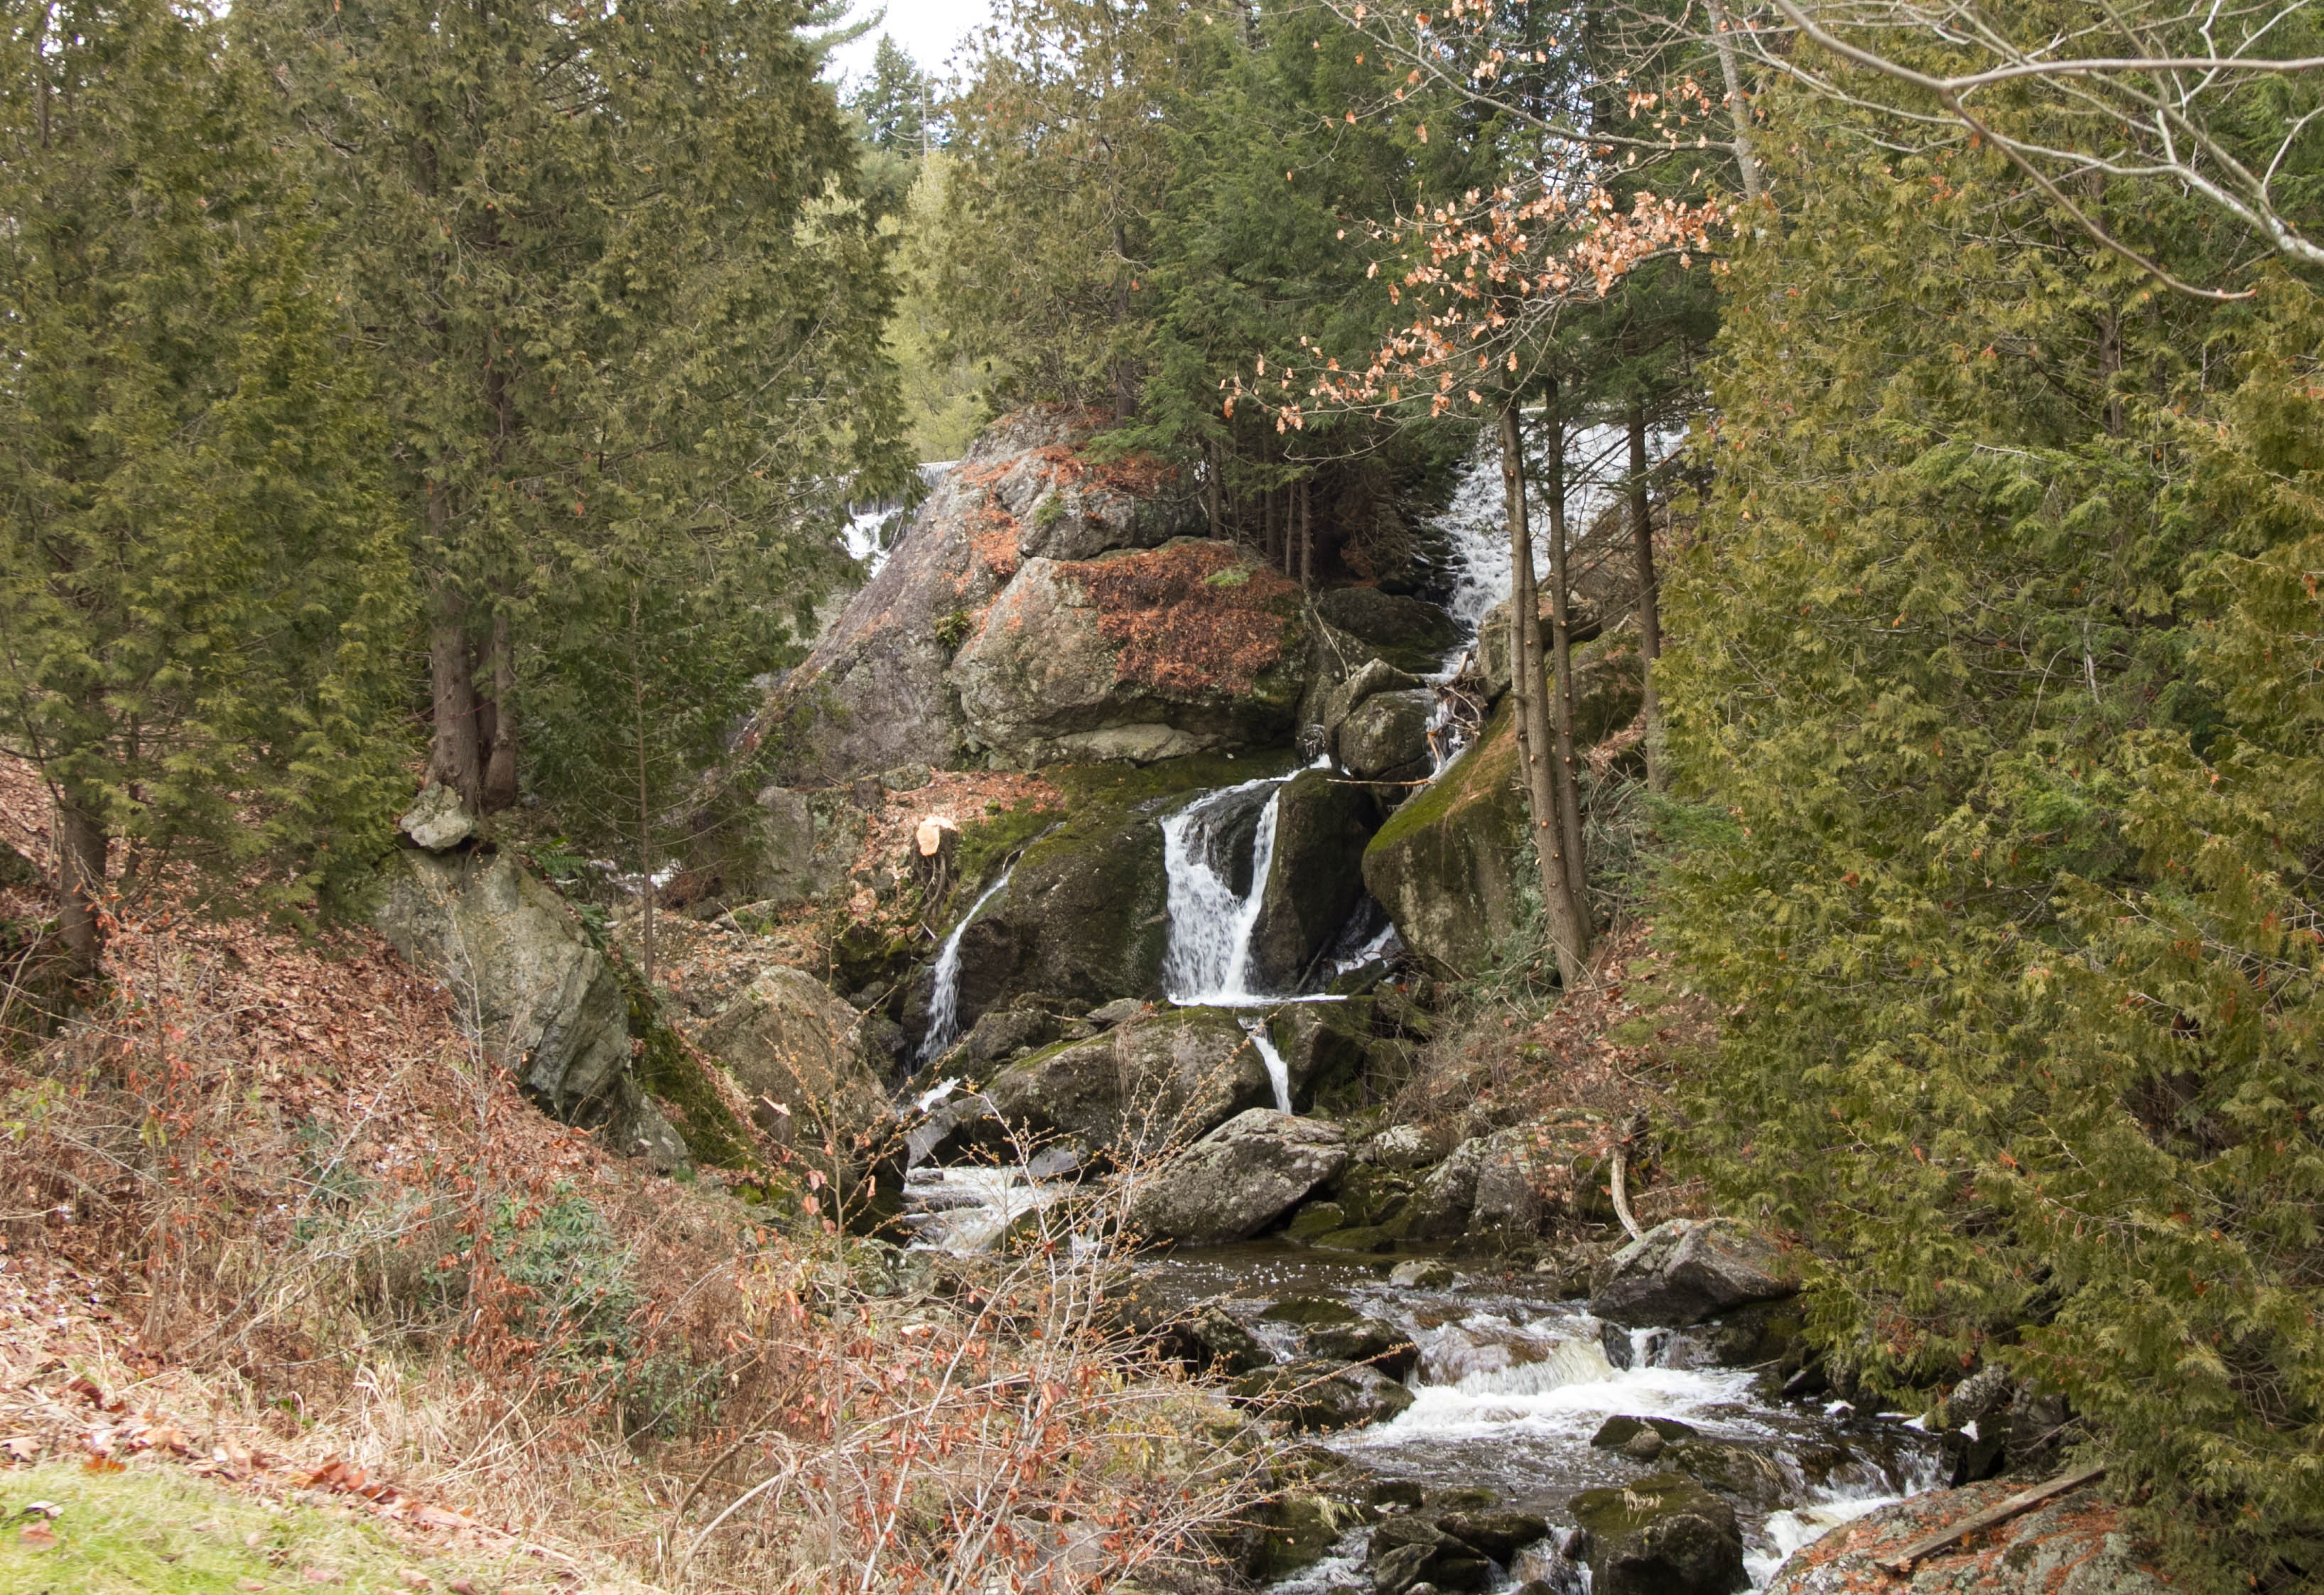 Glacial erratics form part of the waterfall at Glen Villa. T